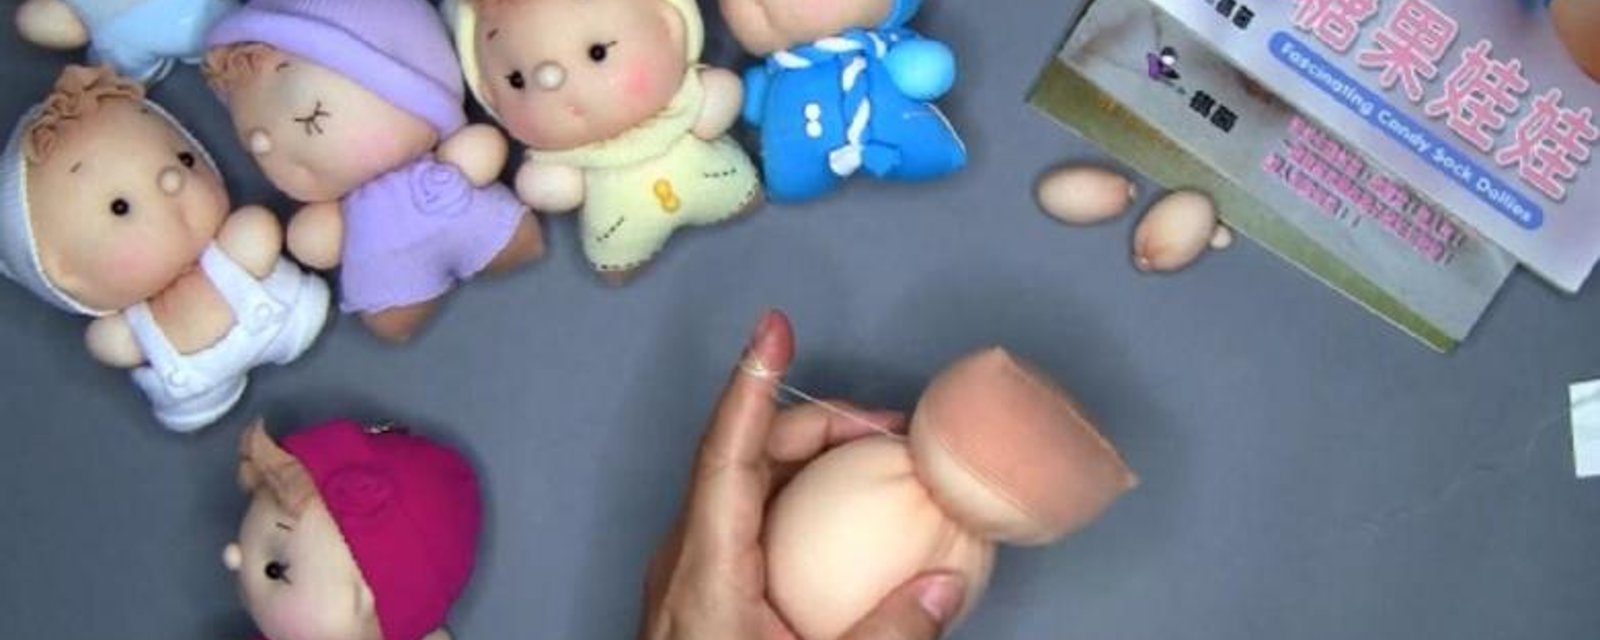 Une technique intéressante pour fabriquer de magnifiques et adorables poupées!! 